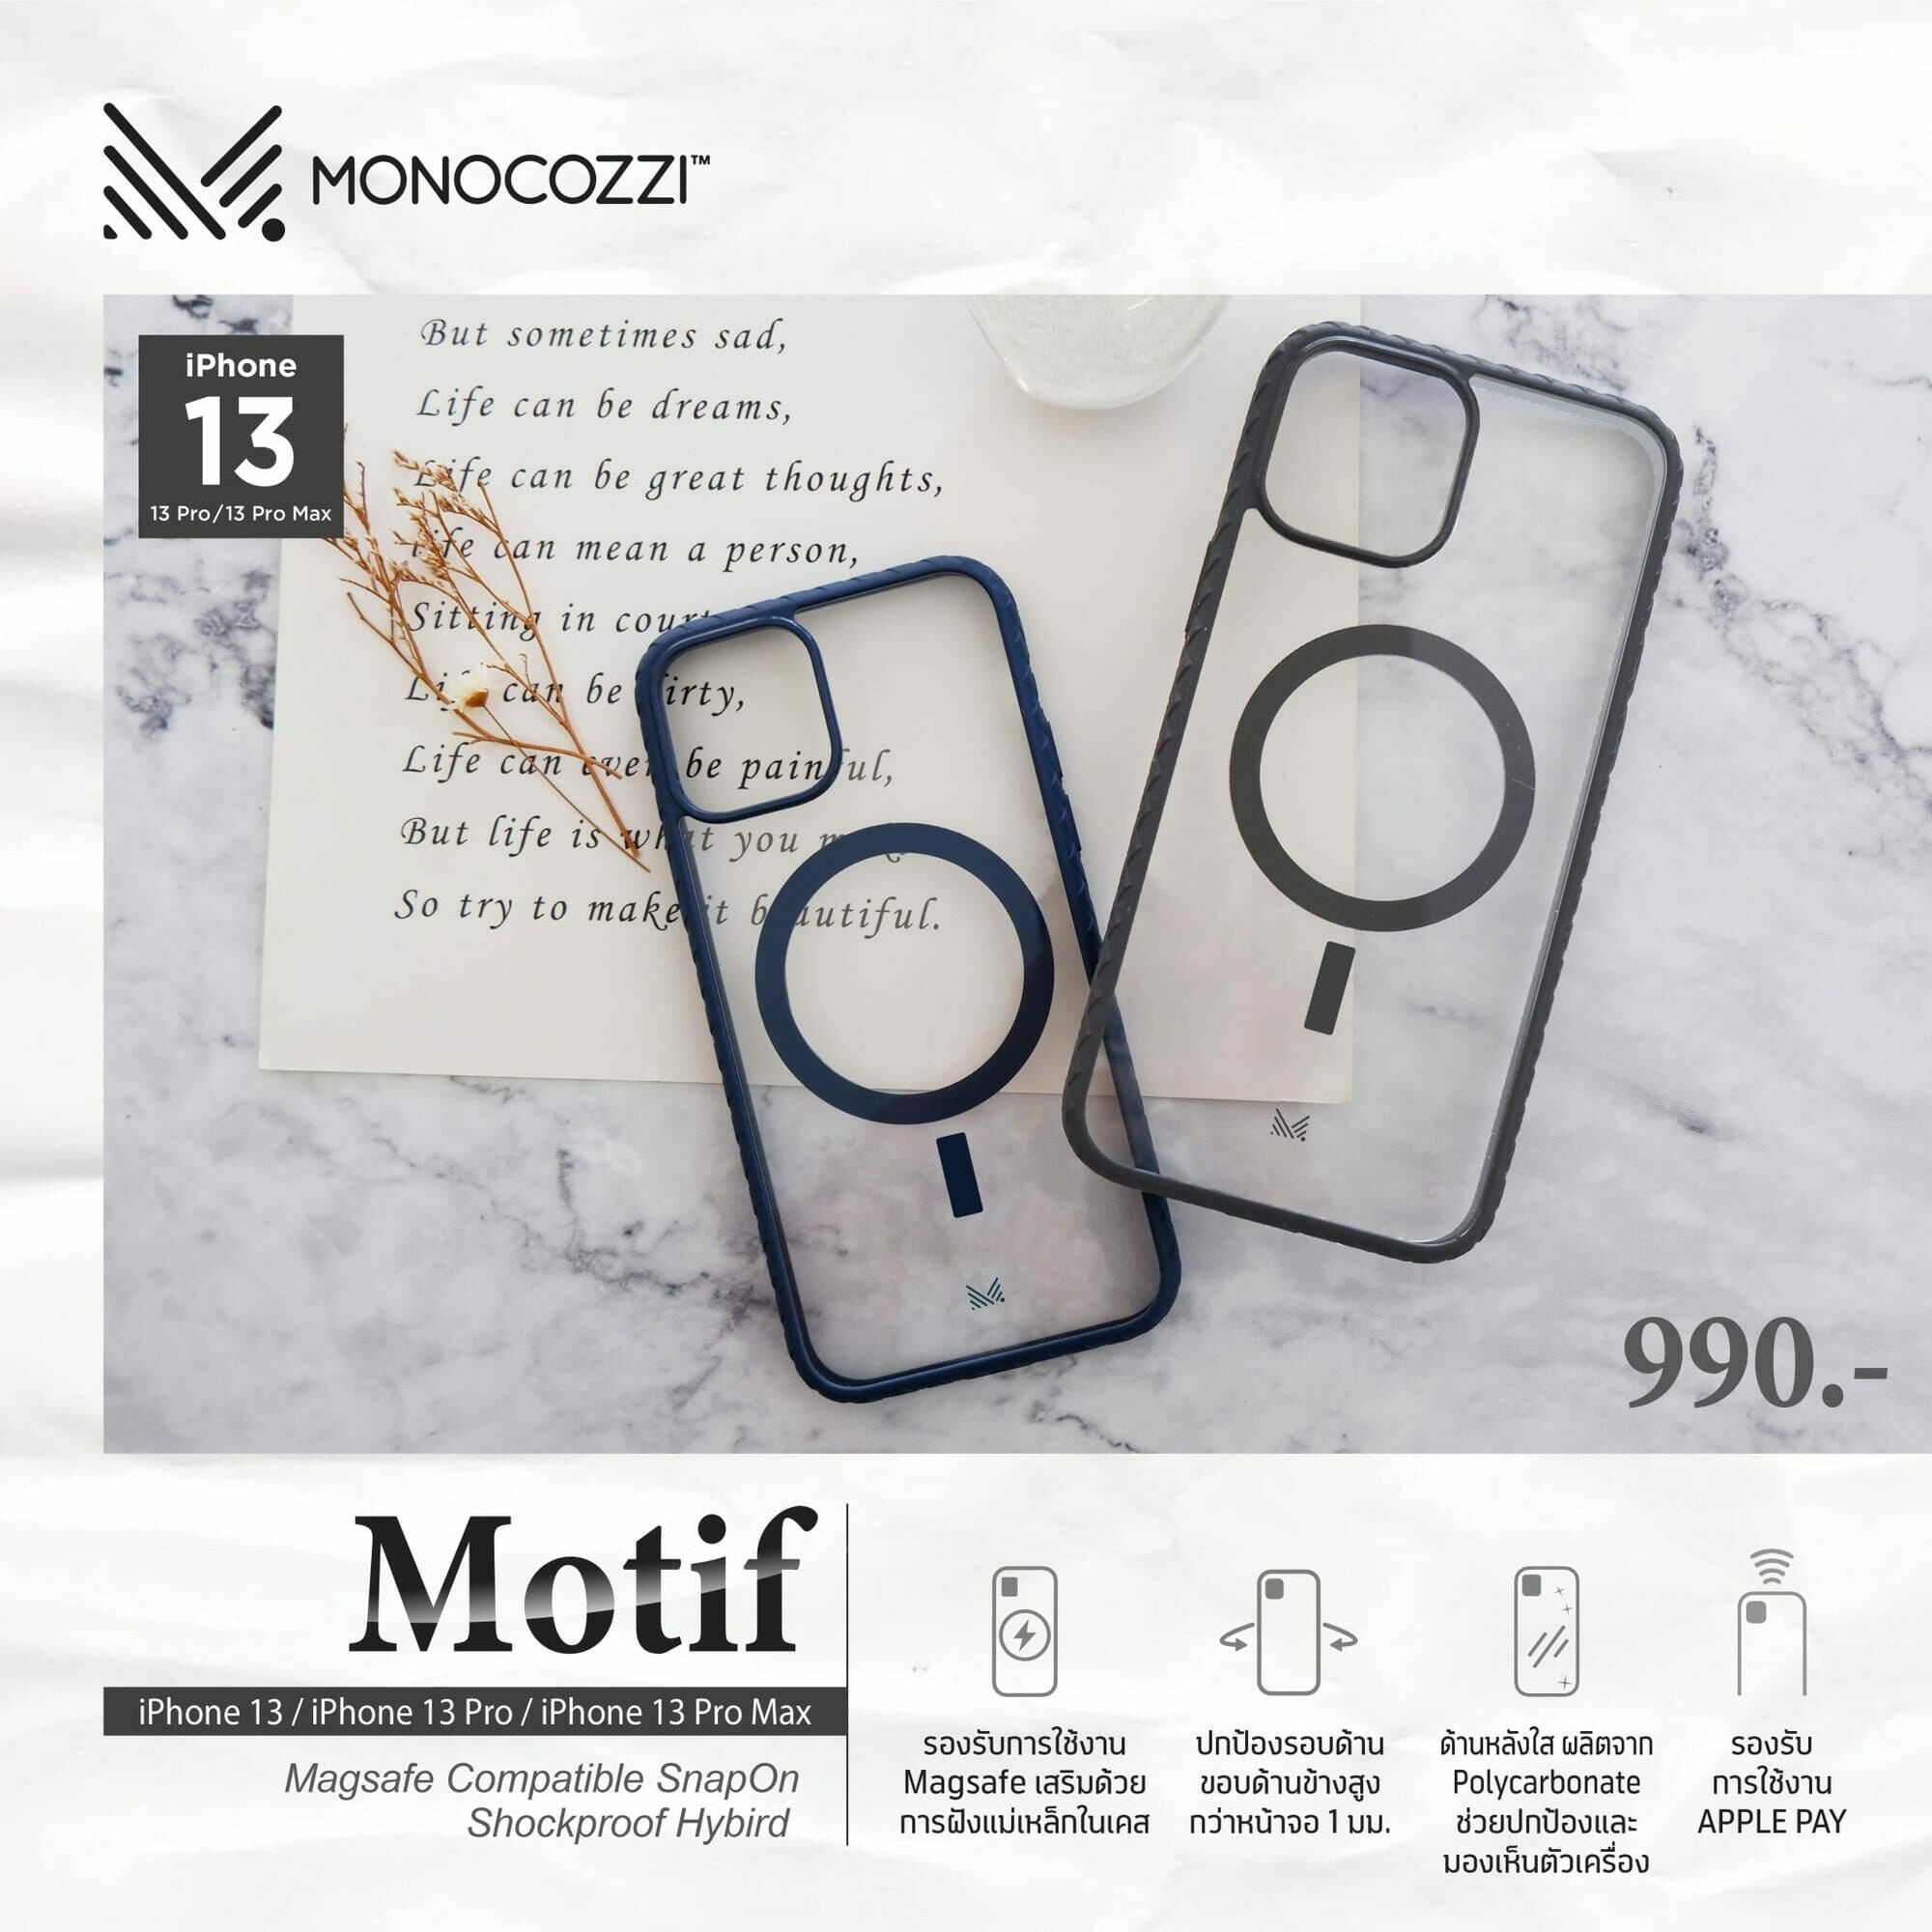 อาร์ทีบีฯ เอาใจสาวก iPhone13 พร้อมส่งเคสกันกระแทก ภายใต้แบรนด์ Monocozzi™ ลงตลาดพร้อมกัน 4 รุ่น 5